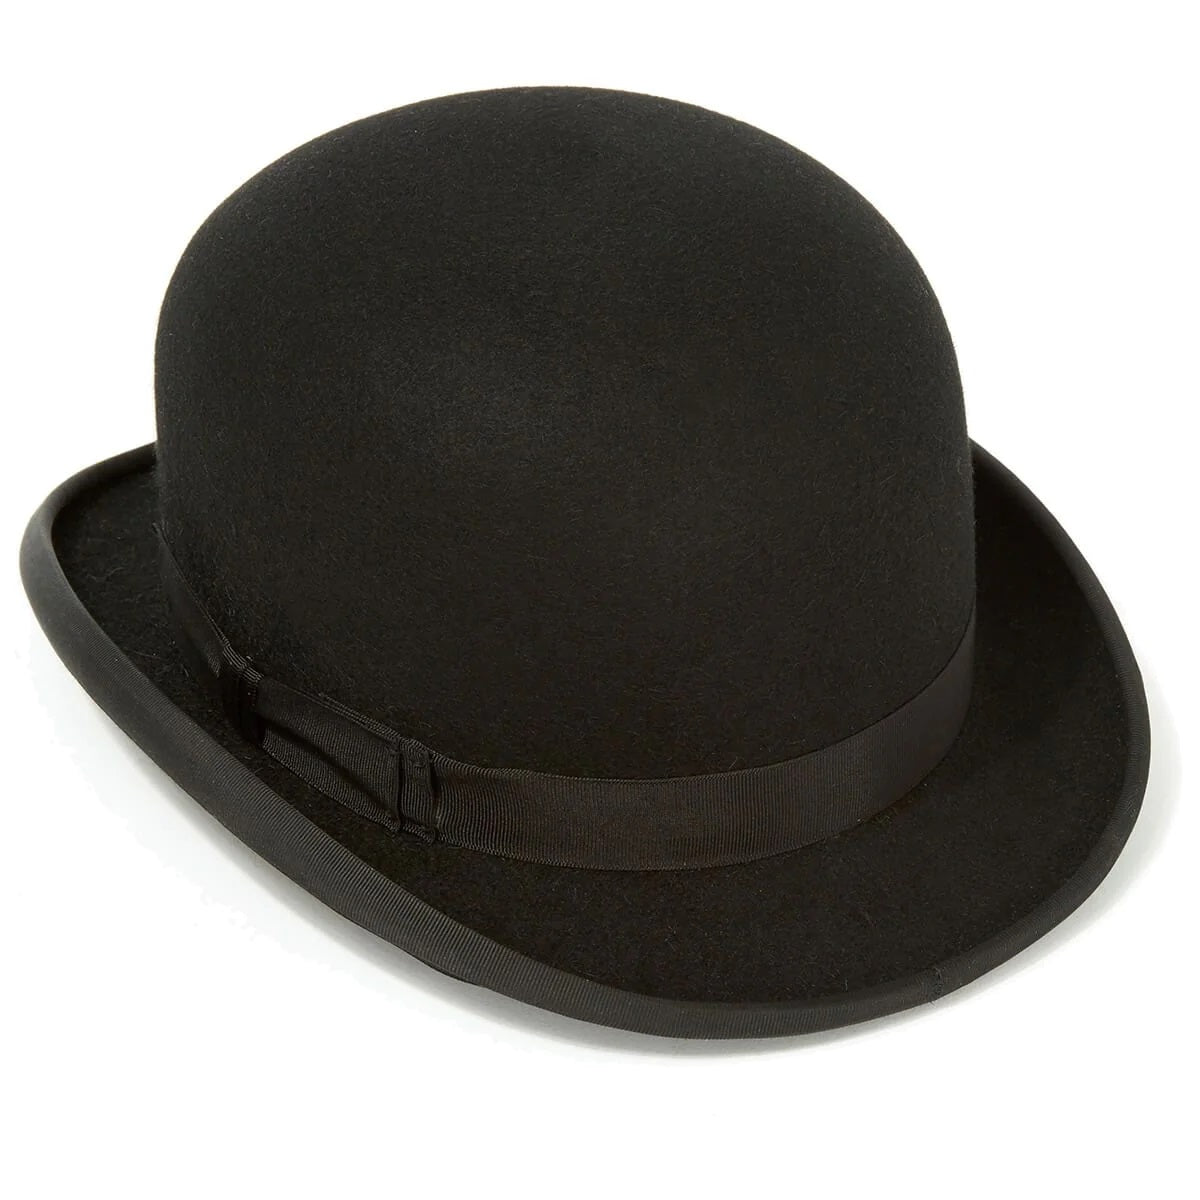 CHRISTYS' Devon Fur Felt Bowler Hat - Adjustable Hunting Pad - Black